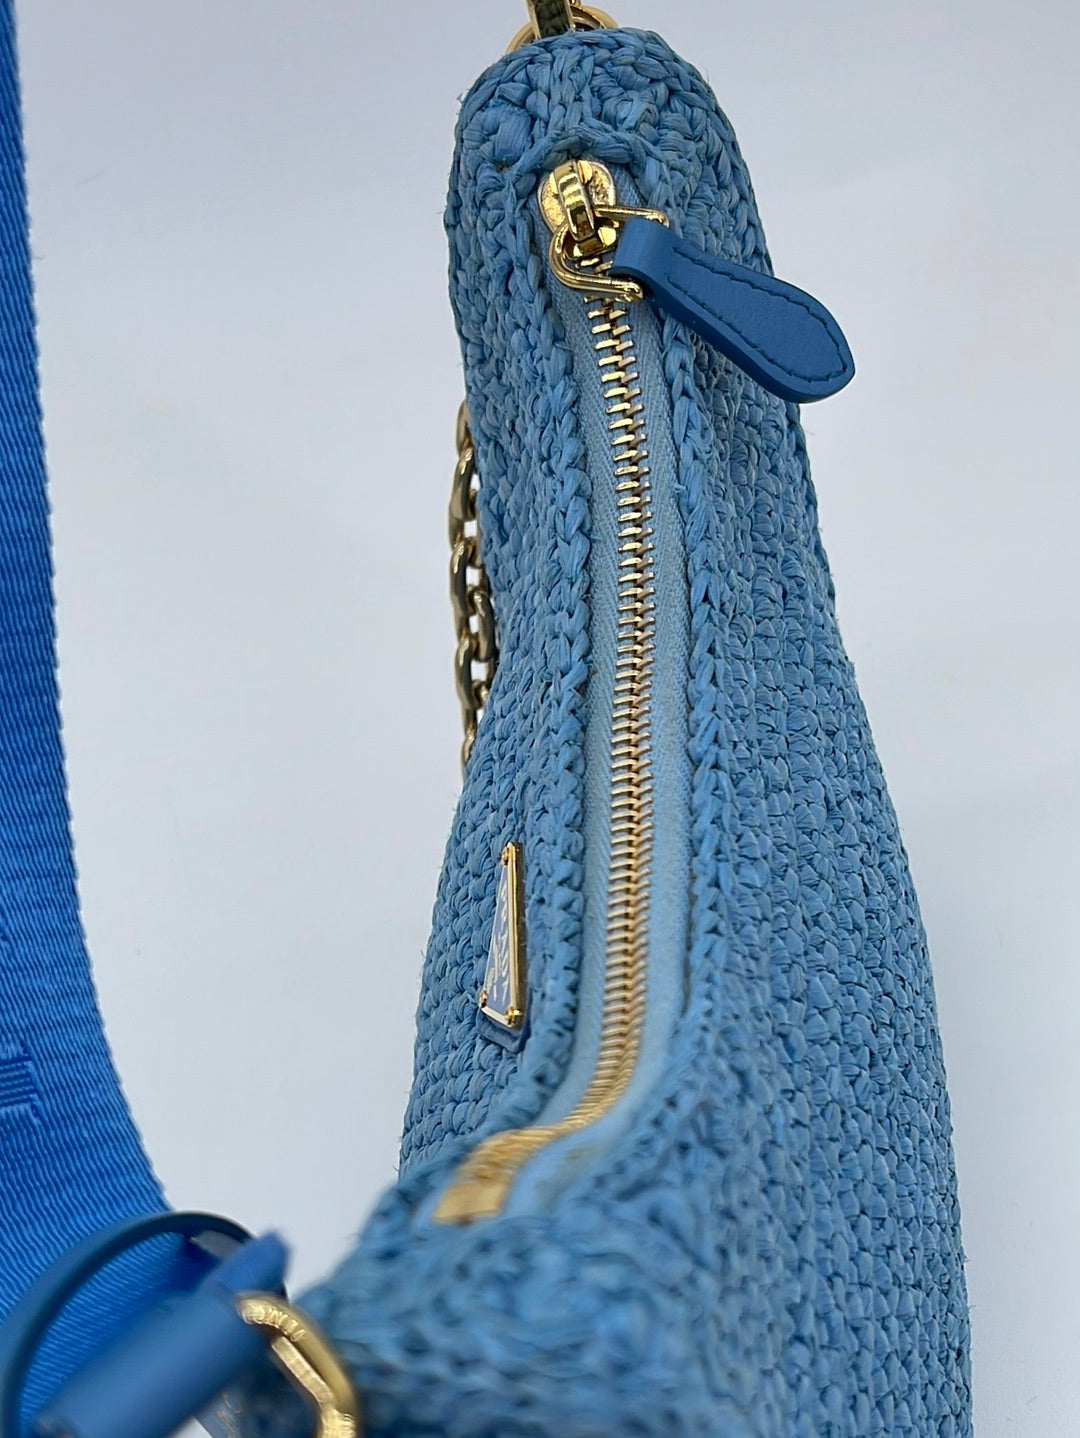 Wyld Blue Vintage Prada White Crochet Tote Bag